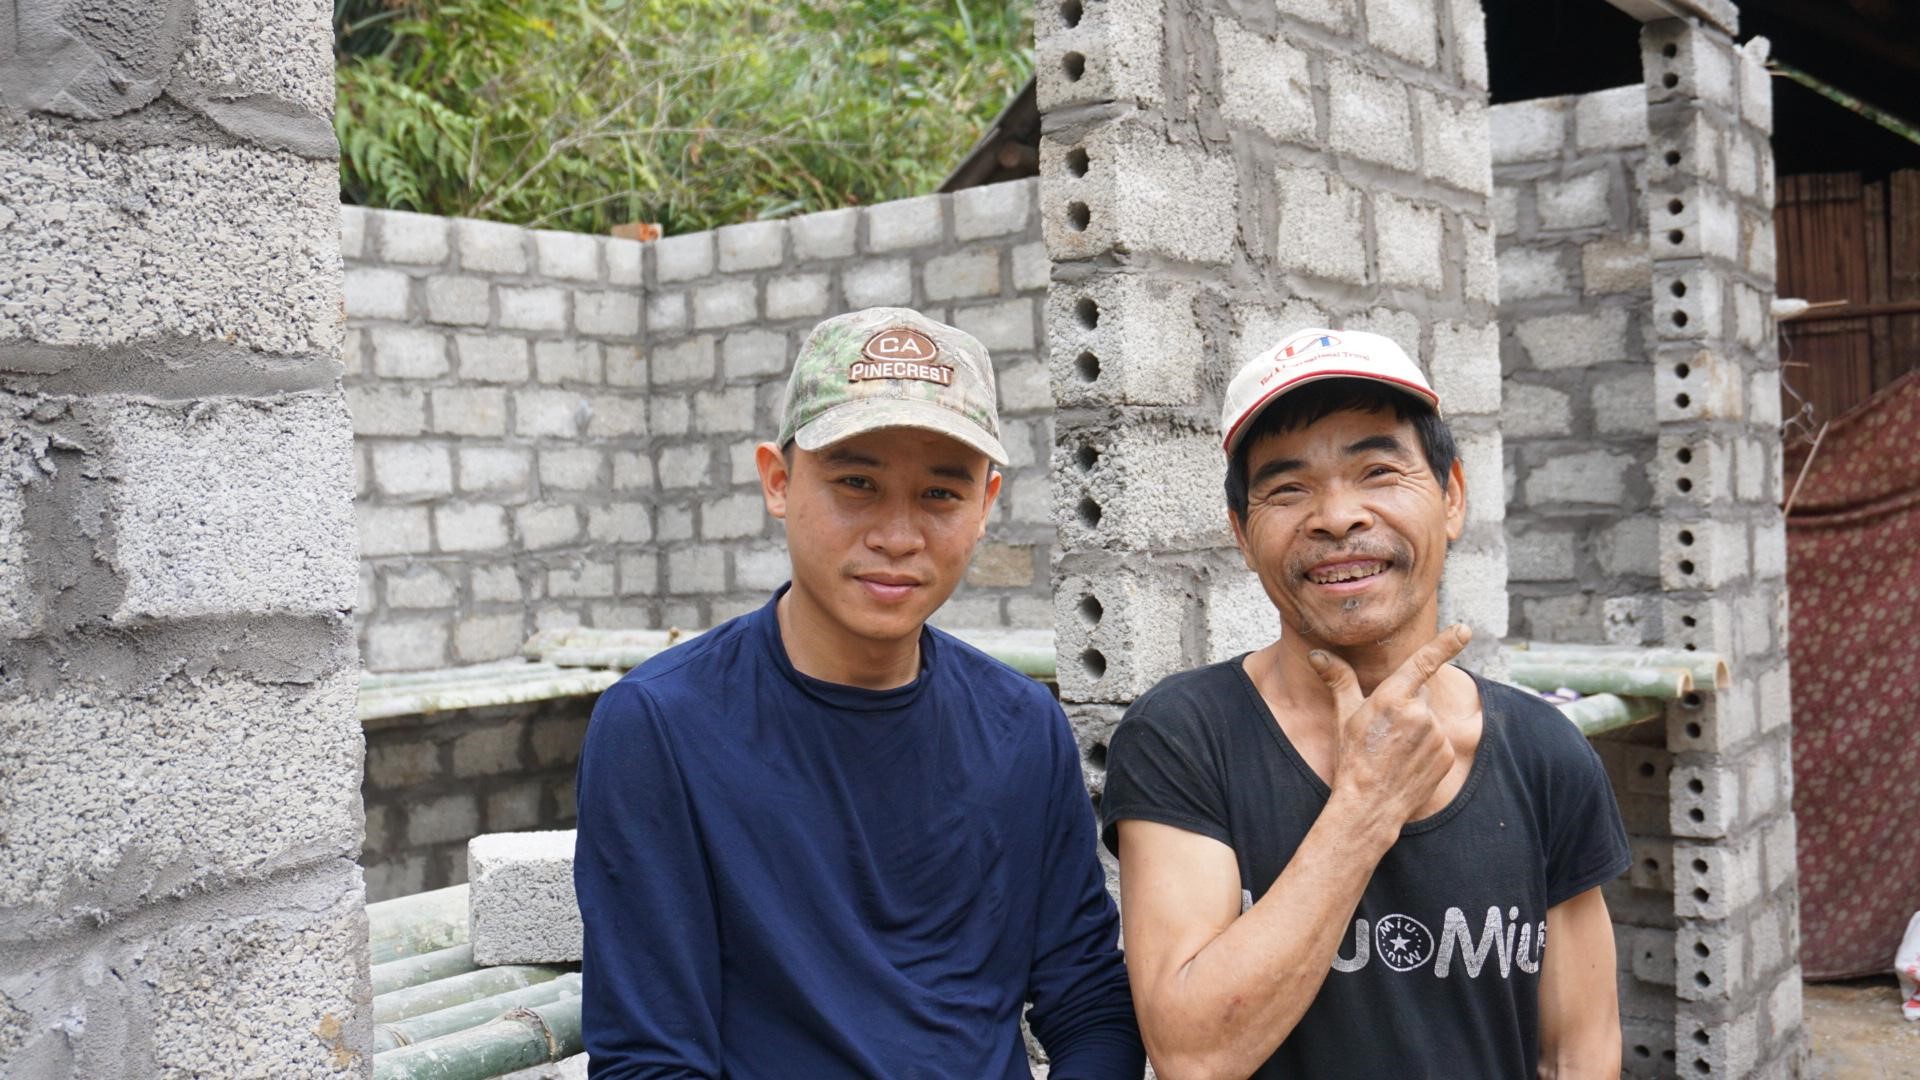 Chàng trai trẻ Trịnh Hoài Nam và câu chuyện xây “tổ ấm” cho người nghèo - ảnh 1